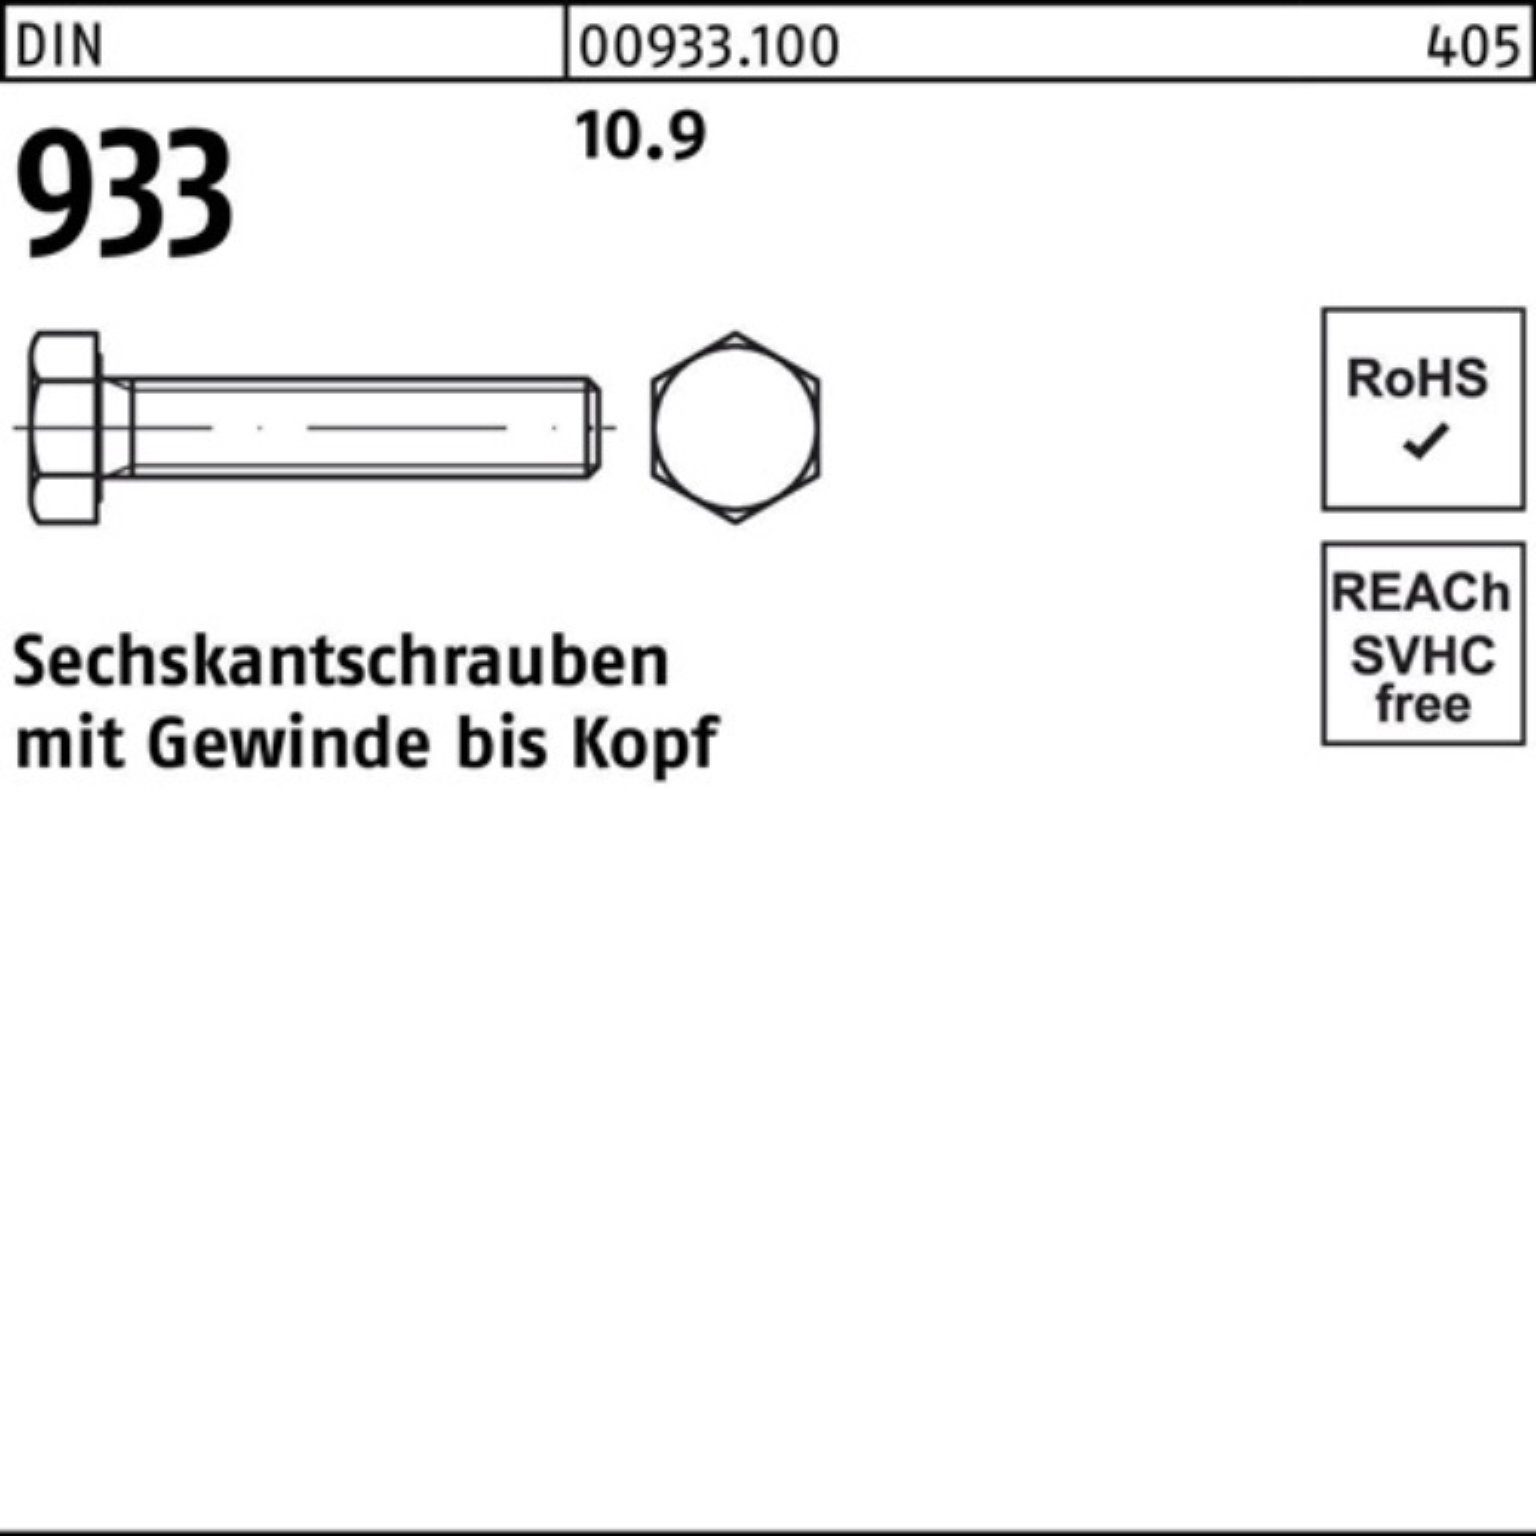 Reyher Sechskantschraube 100er Pack Sechskantschraube 933 VG DIN 25 DIN 10.9 933 50 Stück M24x